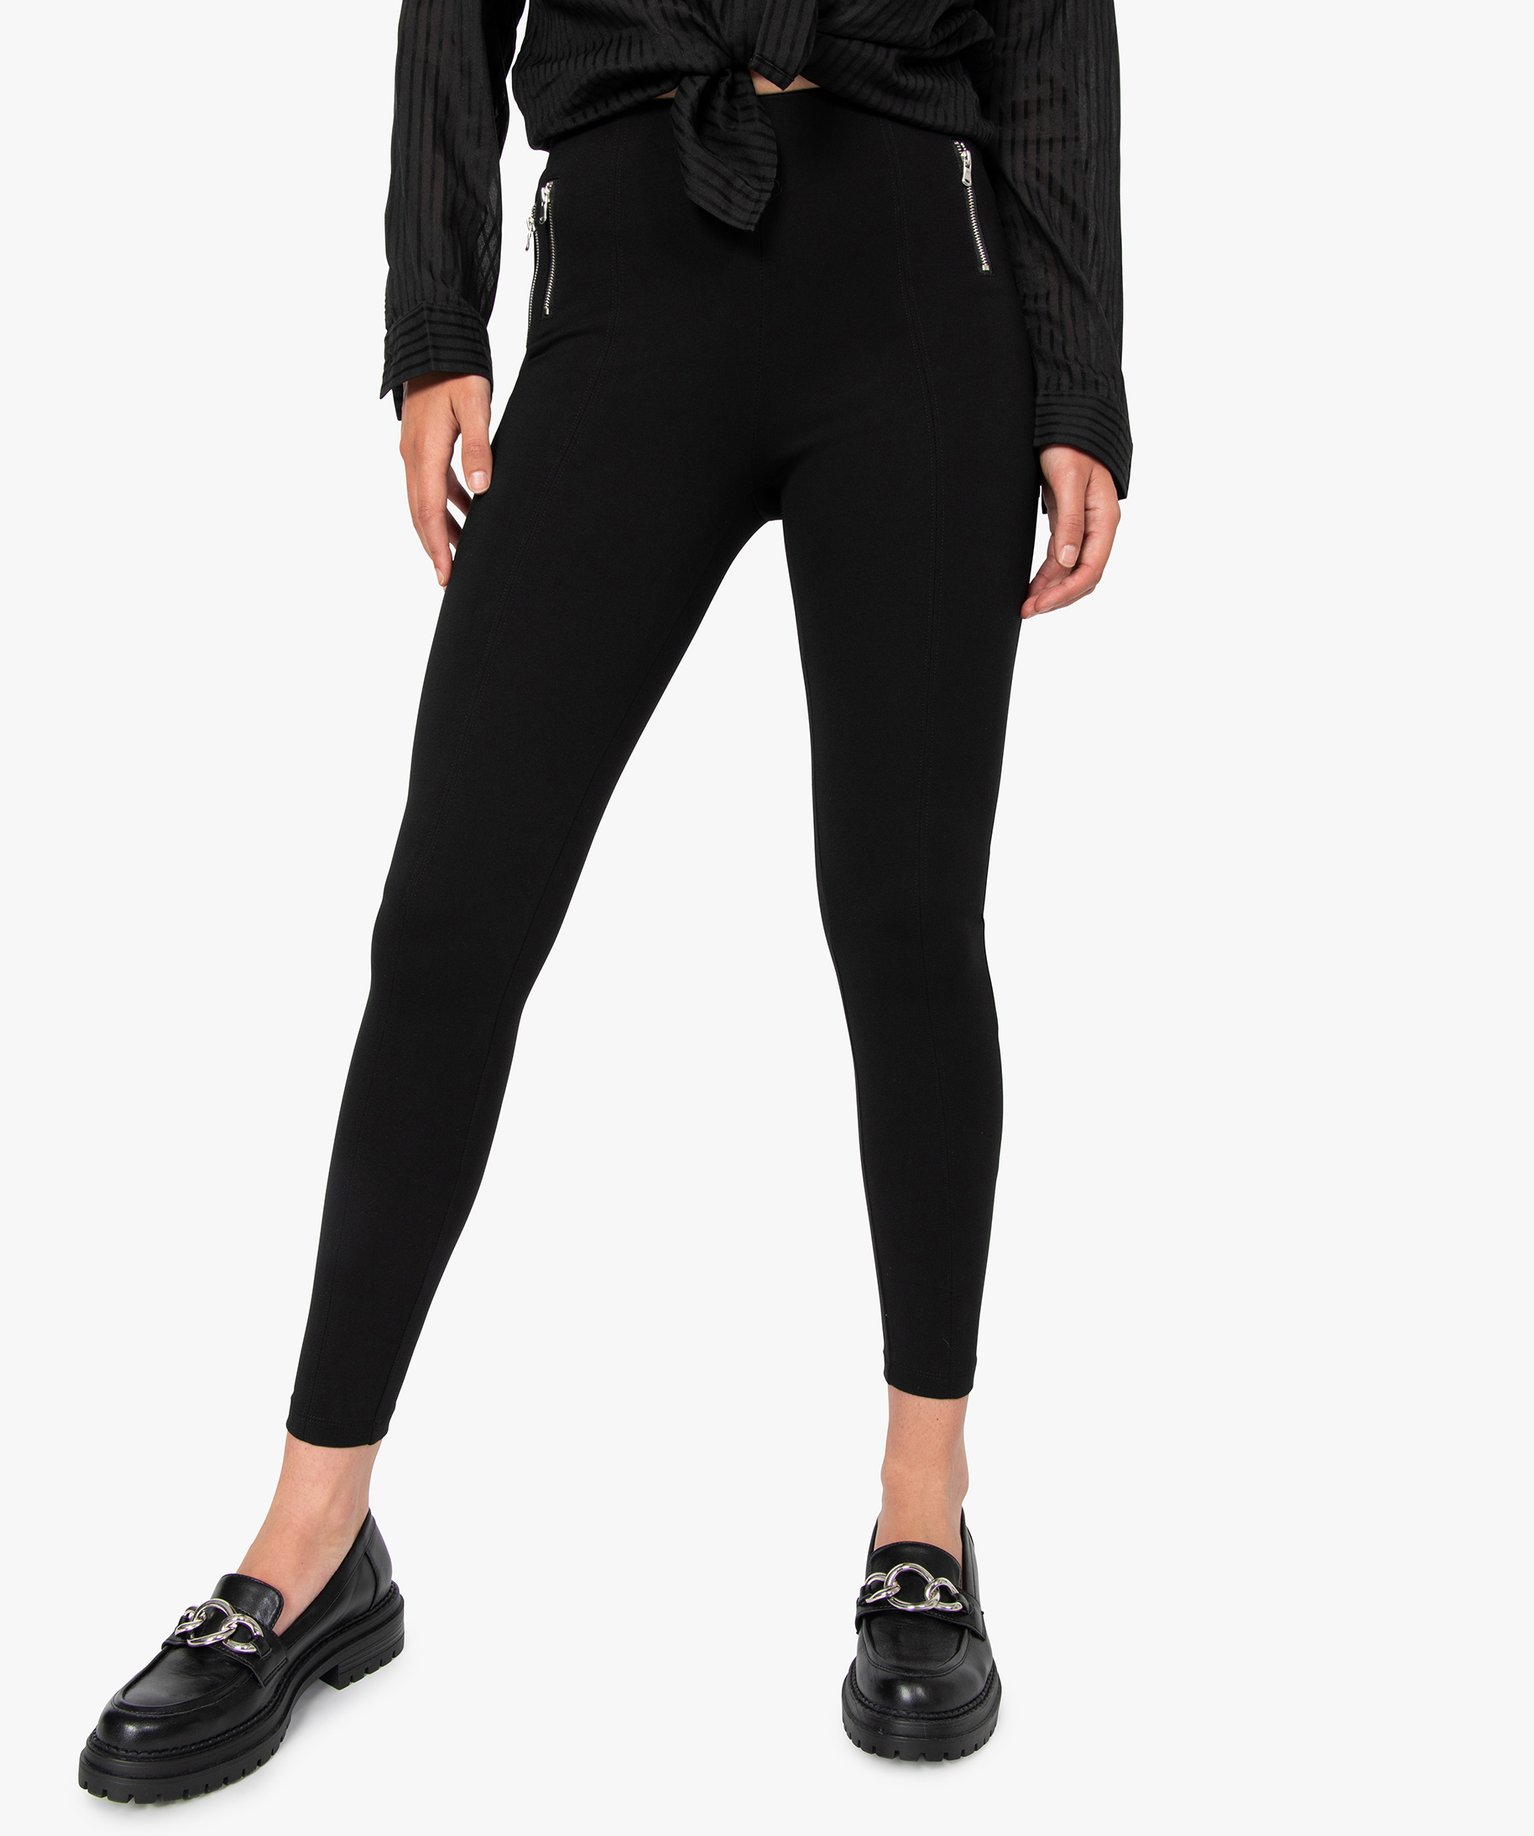 leggings femme avec zip decoratifs sur lavant noir leggings et jeggings